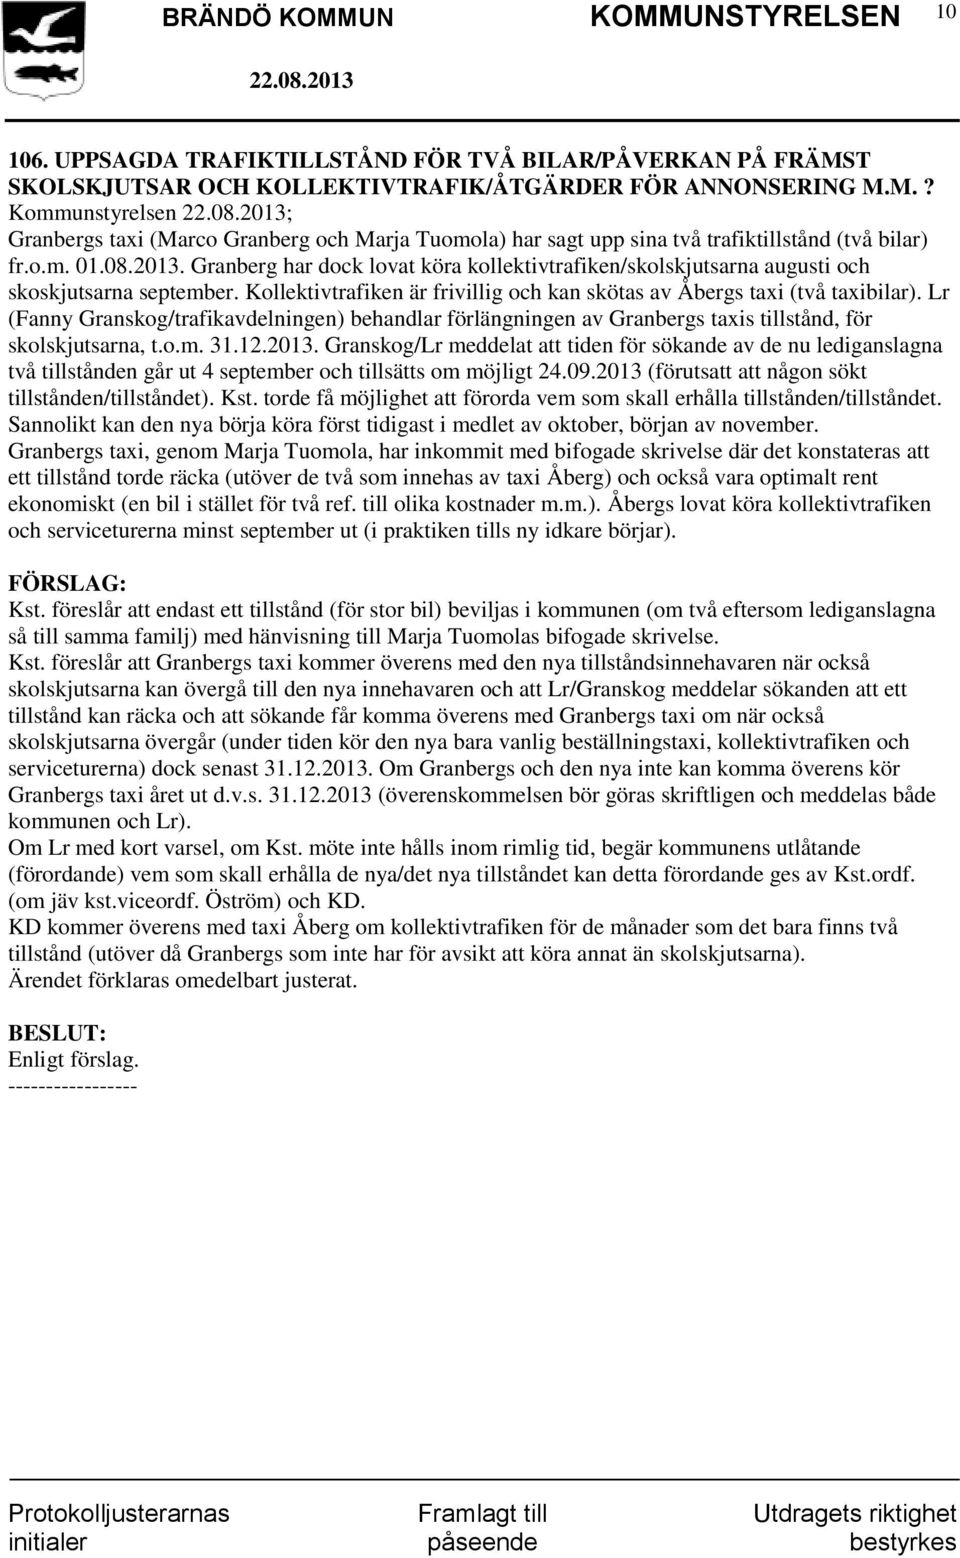 Lr (Fanny Granskog/trafikavdelningen) behandlar förlängningen av Granbergs taxis tillstånd, för skolskjutsarna, t.o.m. 31.12.2013.